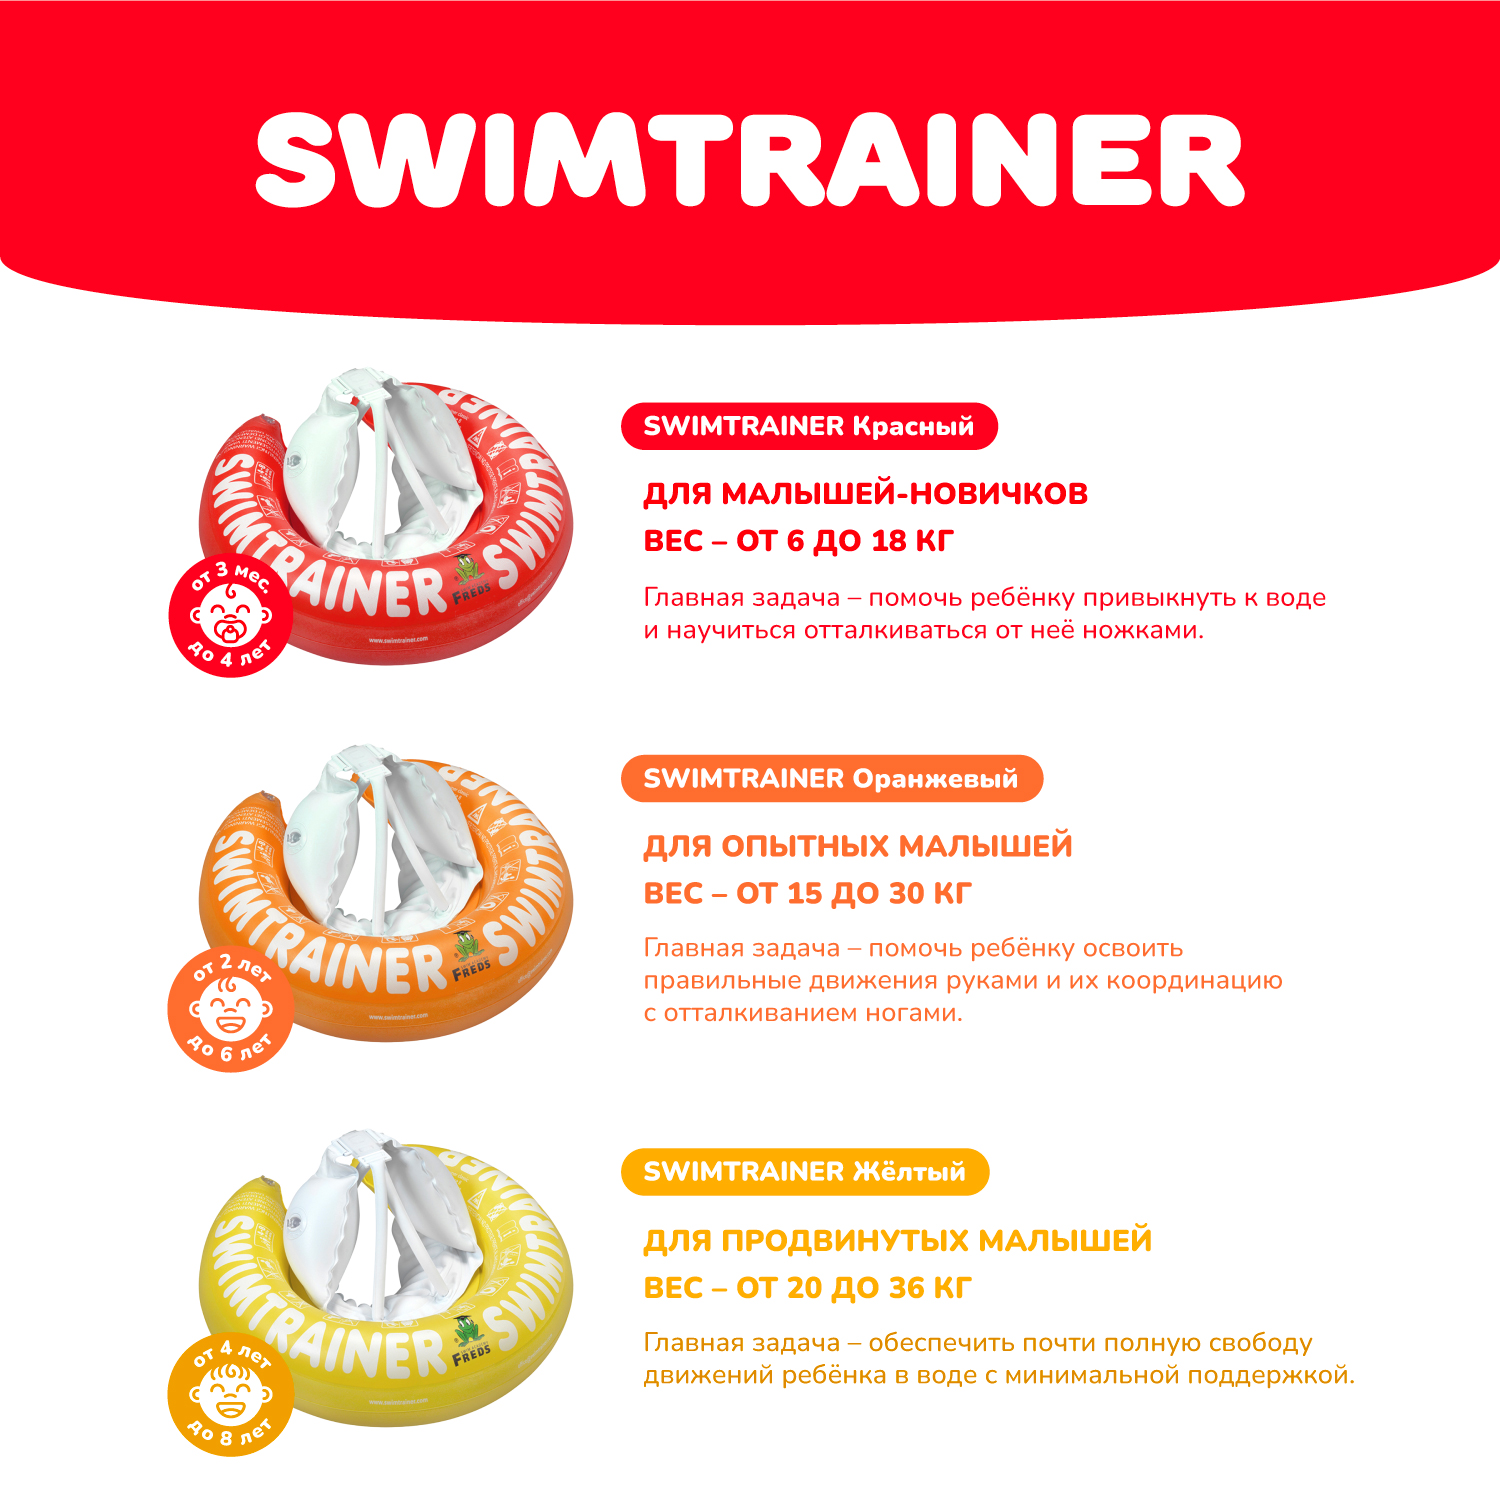 Круг надувной Freds Swim Academy Swimtrainer «Сlassic» для обучения плаванию (3 мес-4 года) Красный - фото 7